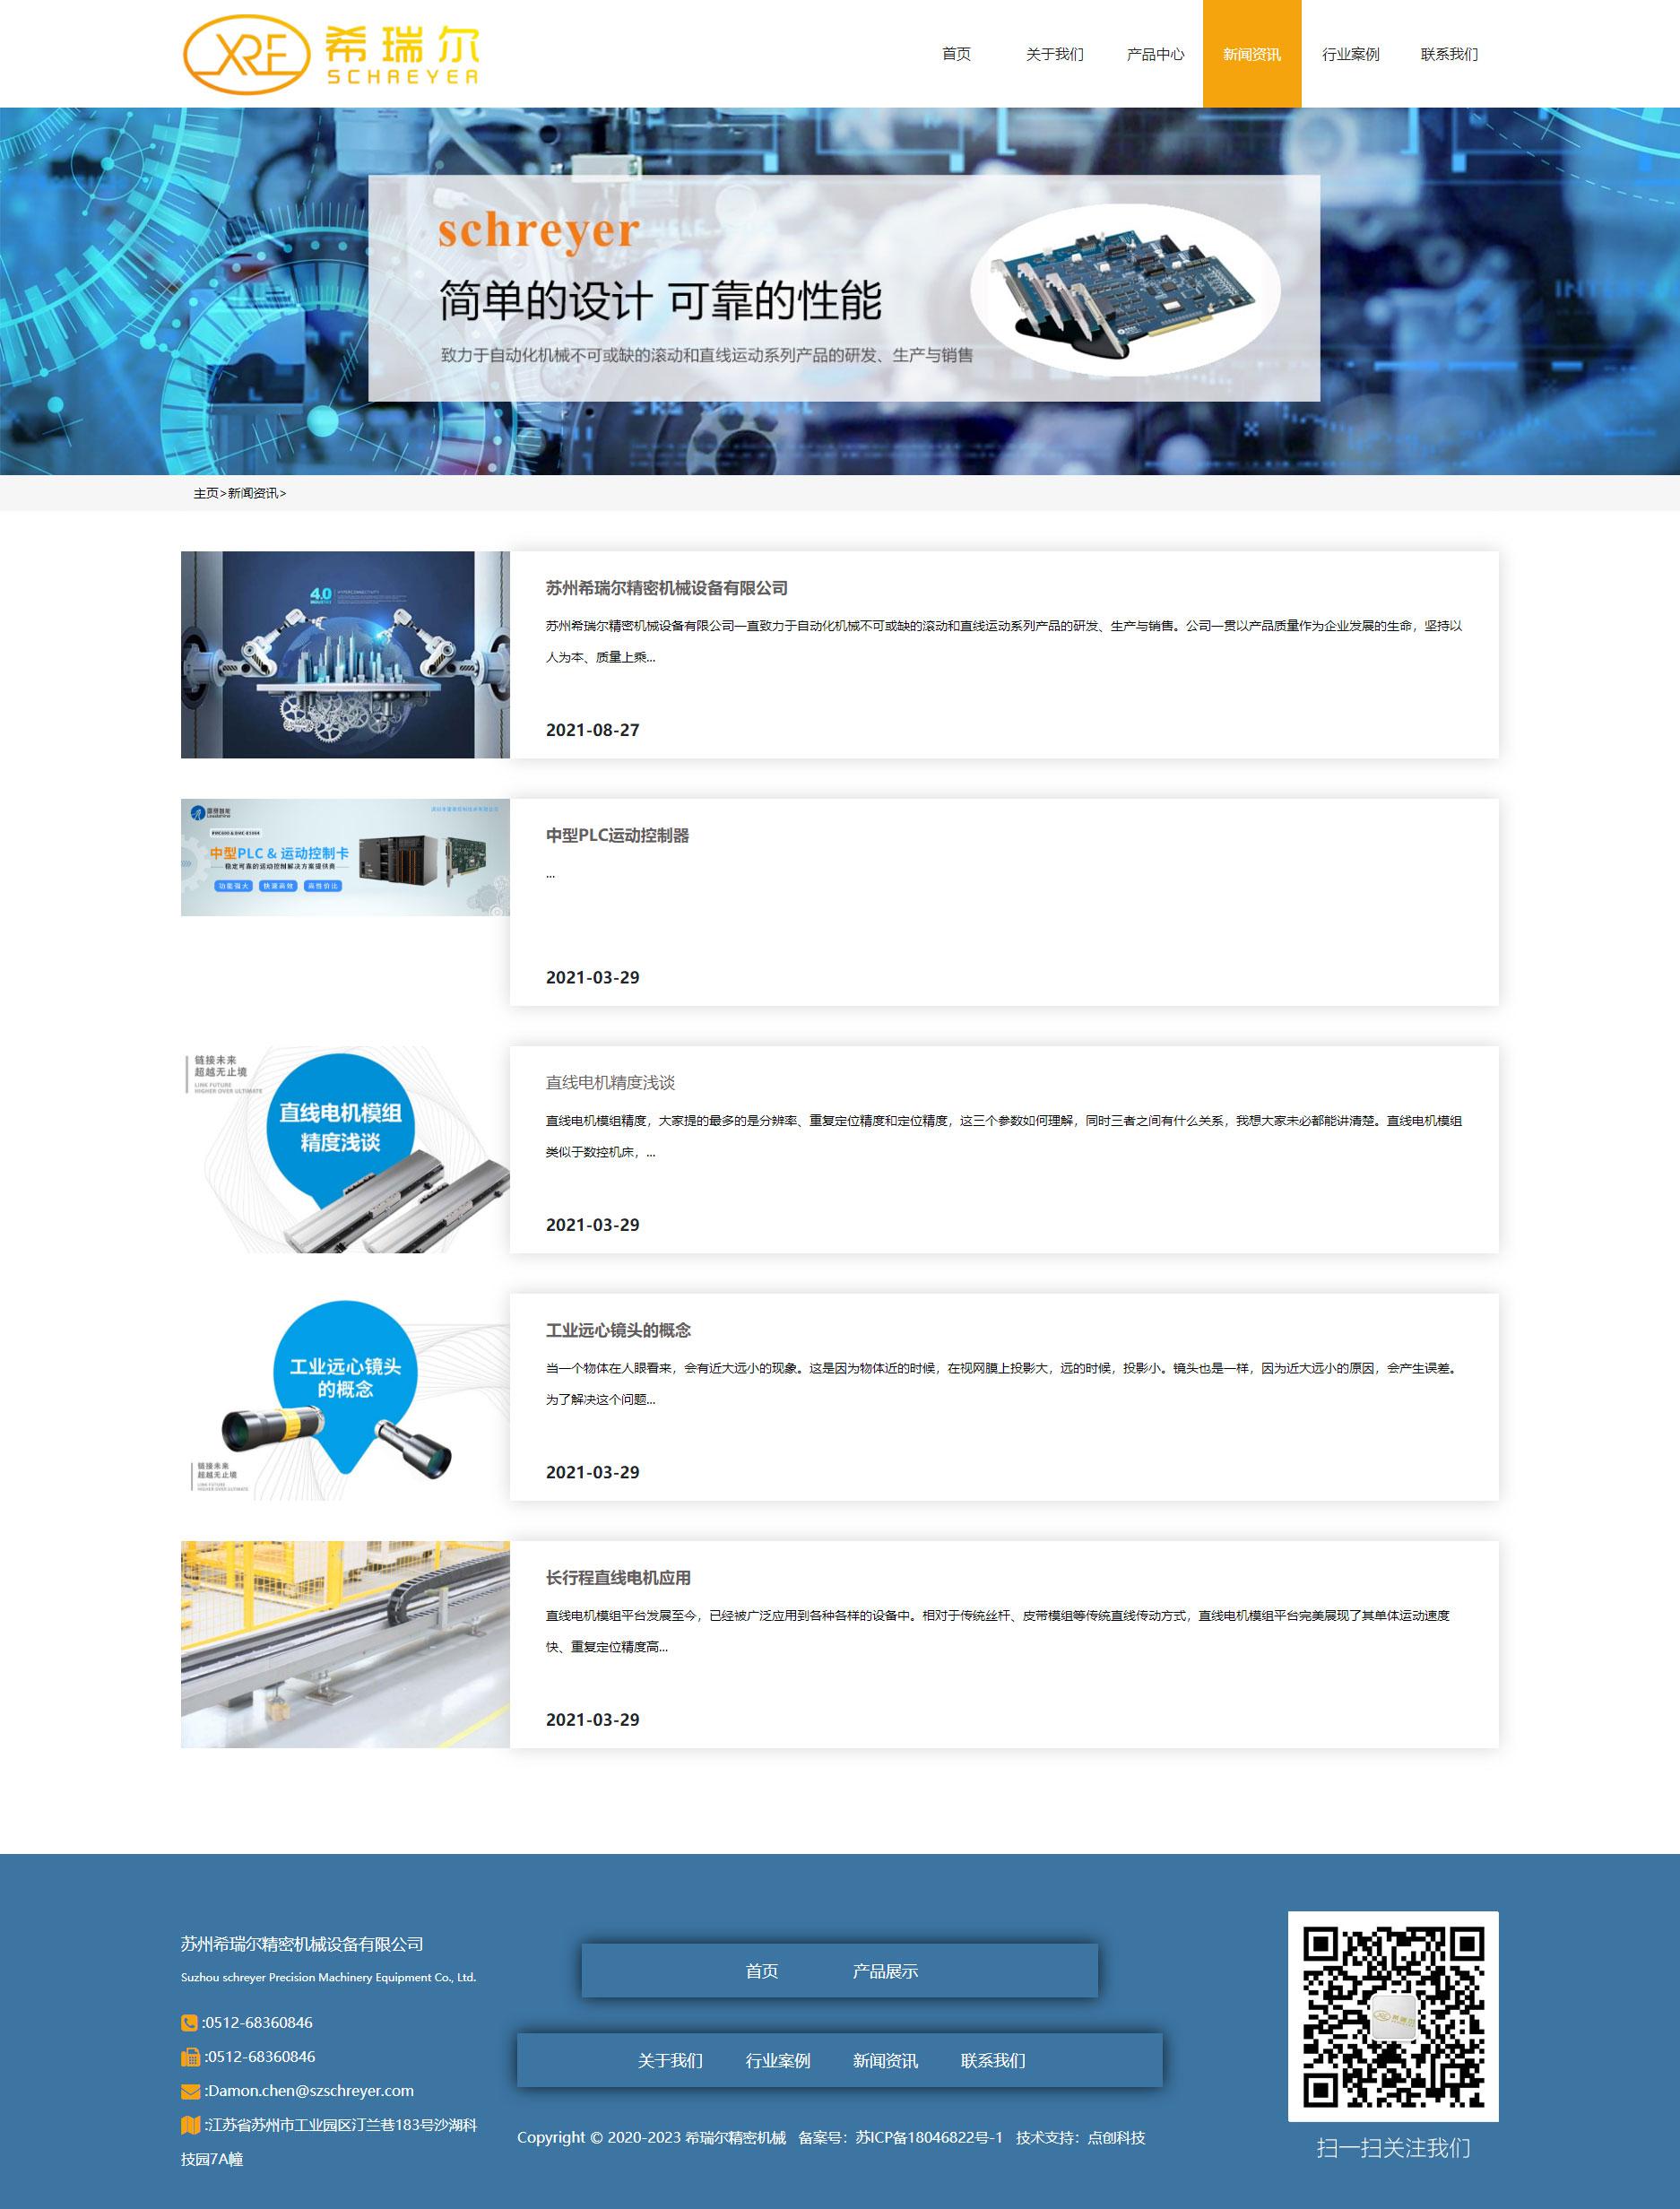 苏州网页设计公司点创科技为希瑞尔精密机械设计的官网新闻资讯页面